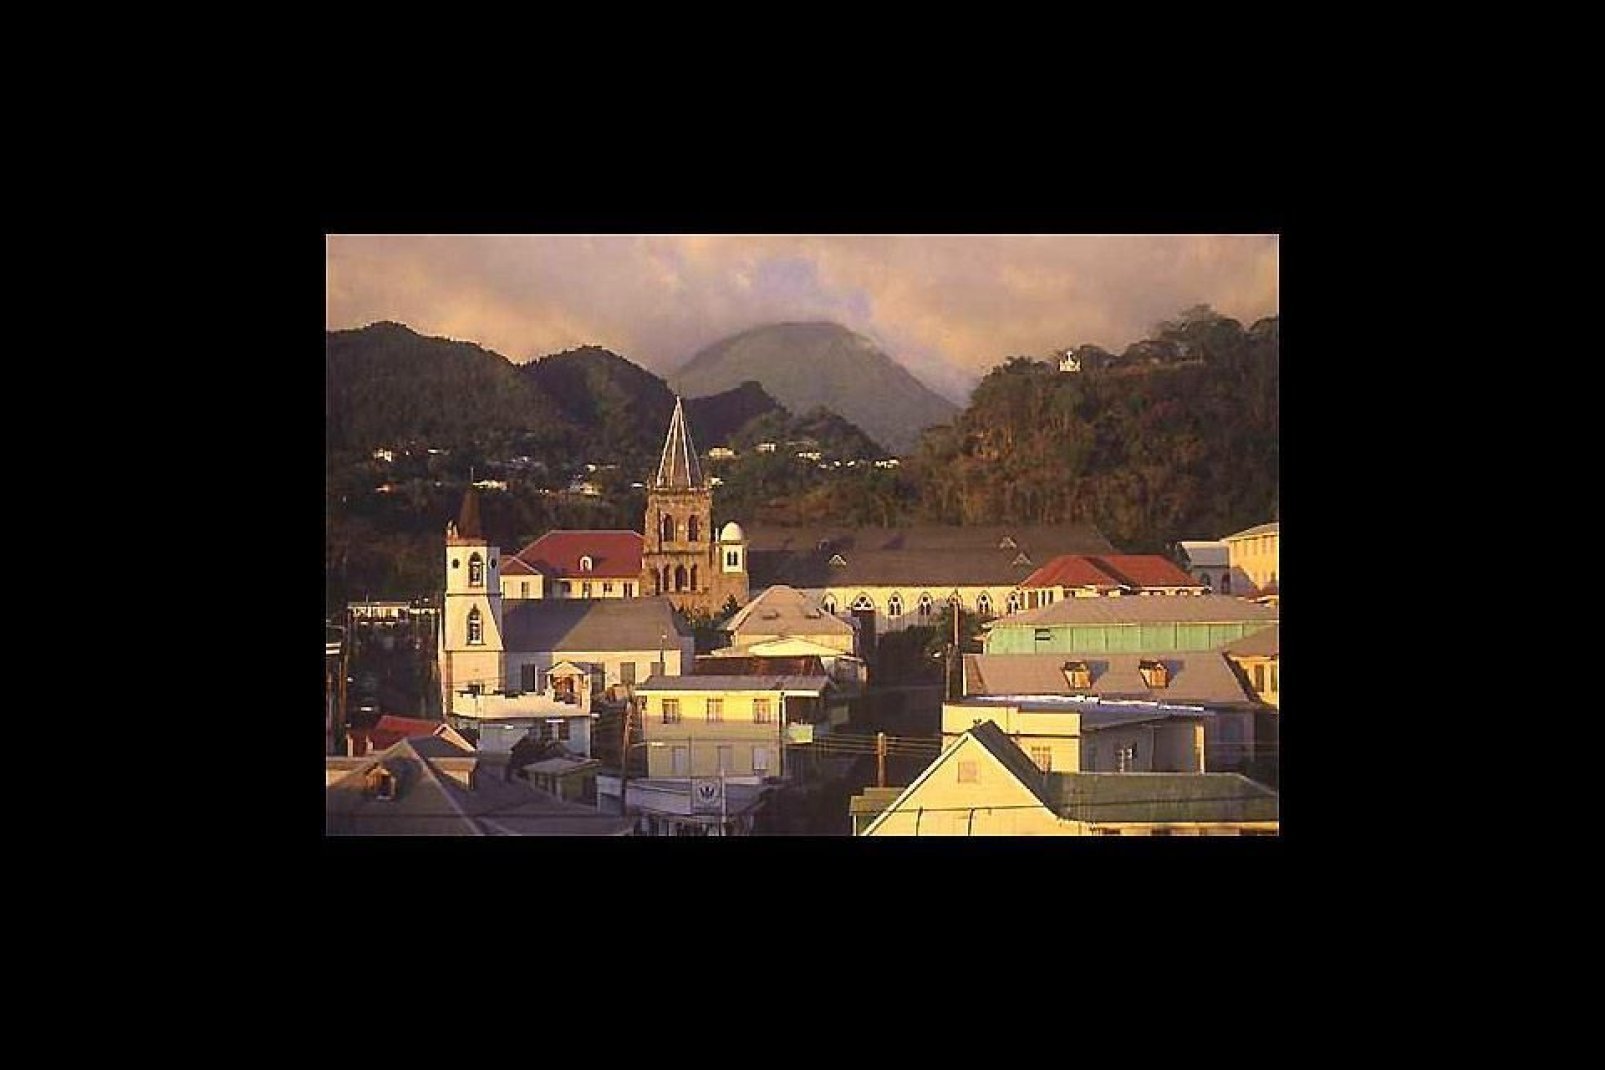 Roseau, la pequeña capital de Dominica, está instalada a orillas del mar, al sudoeste de la isla.